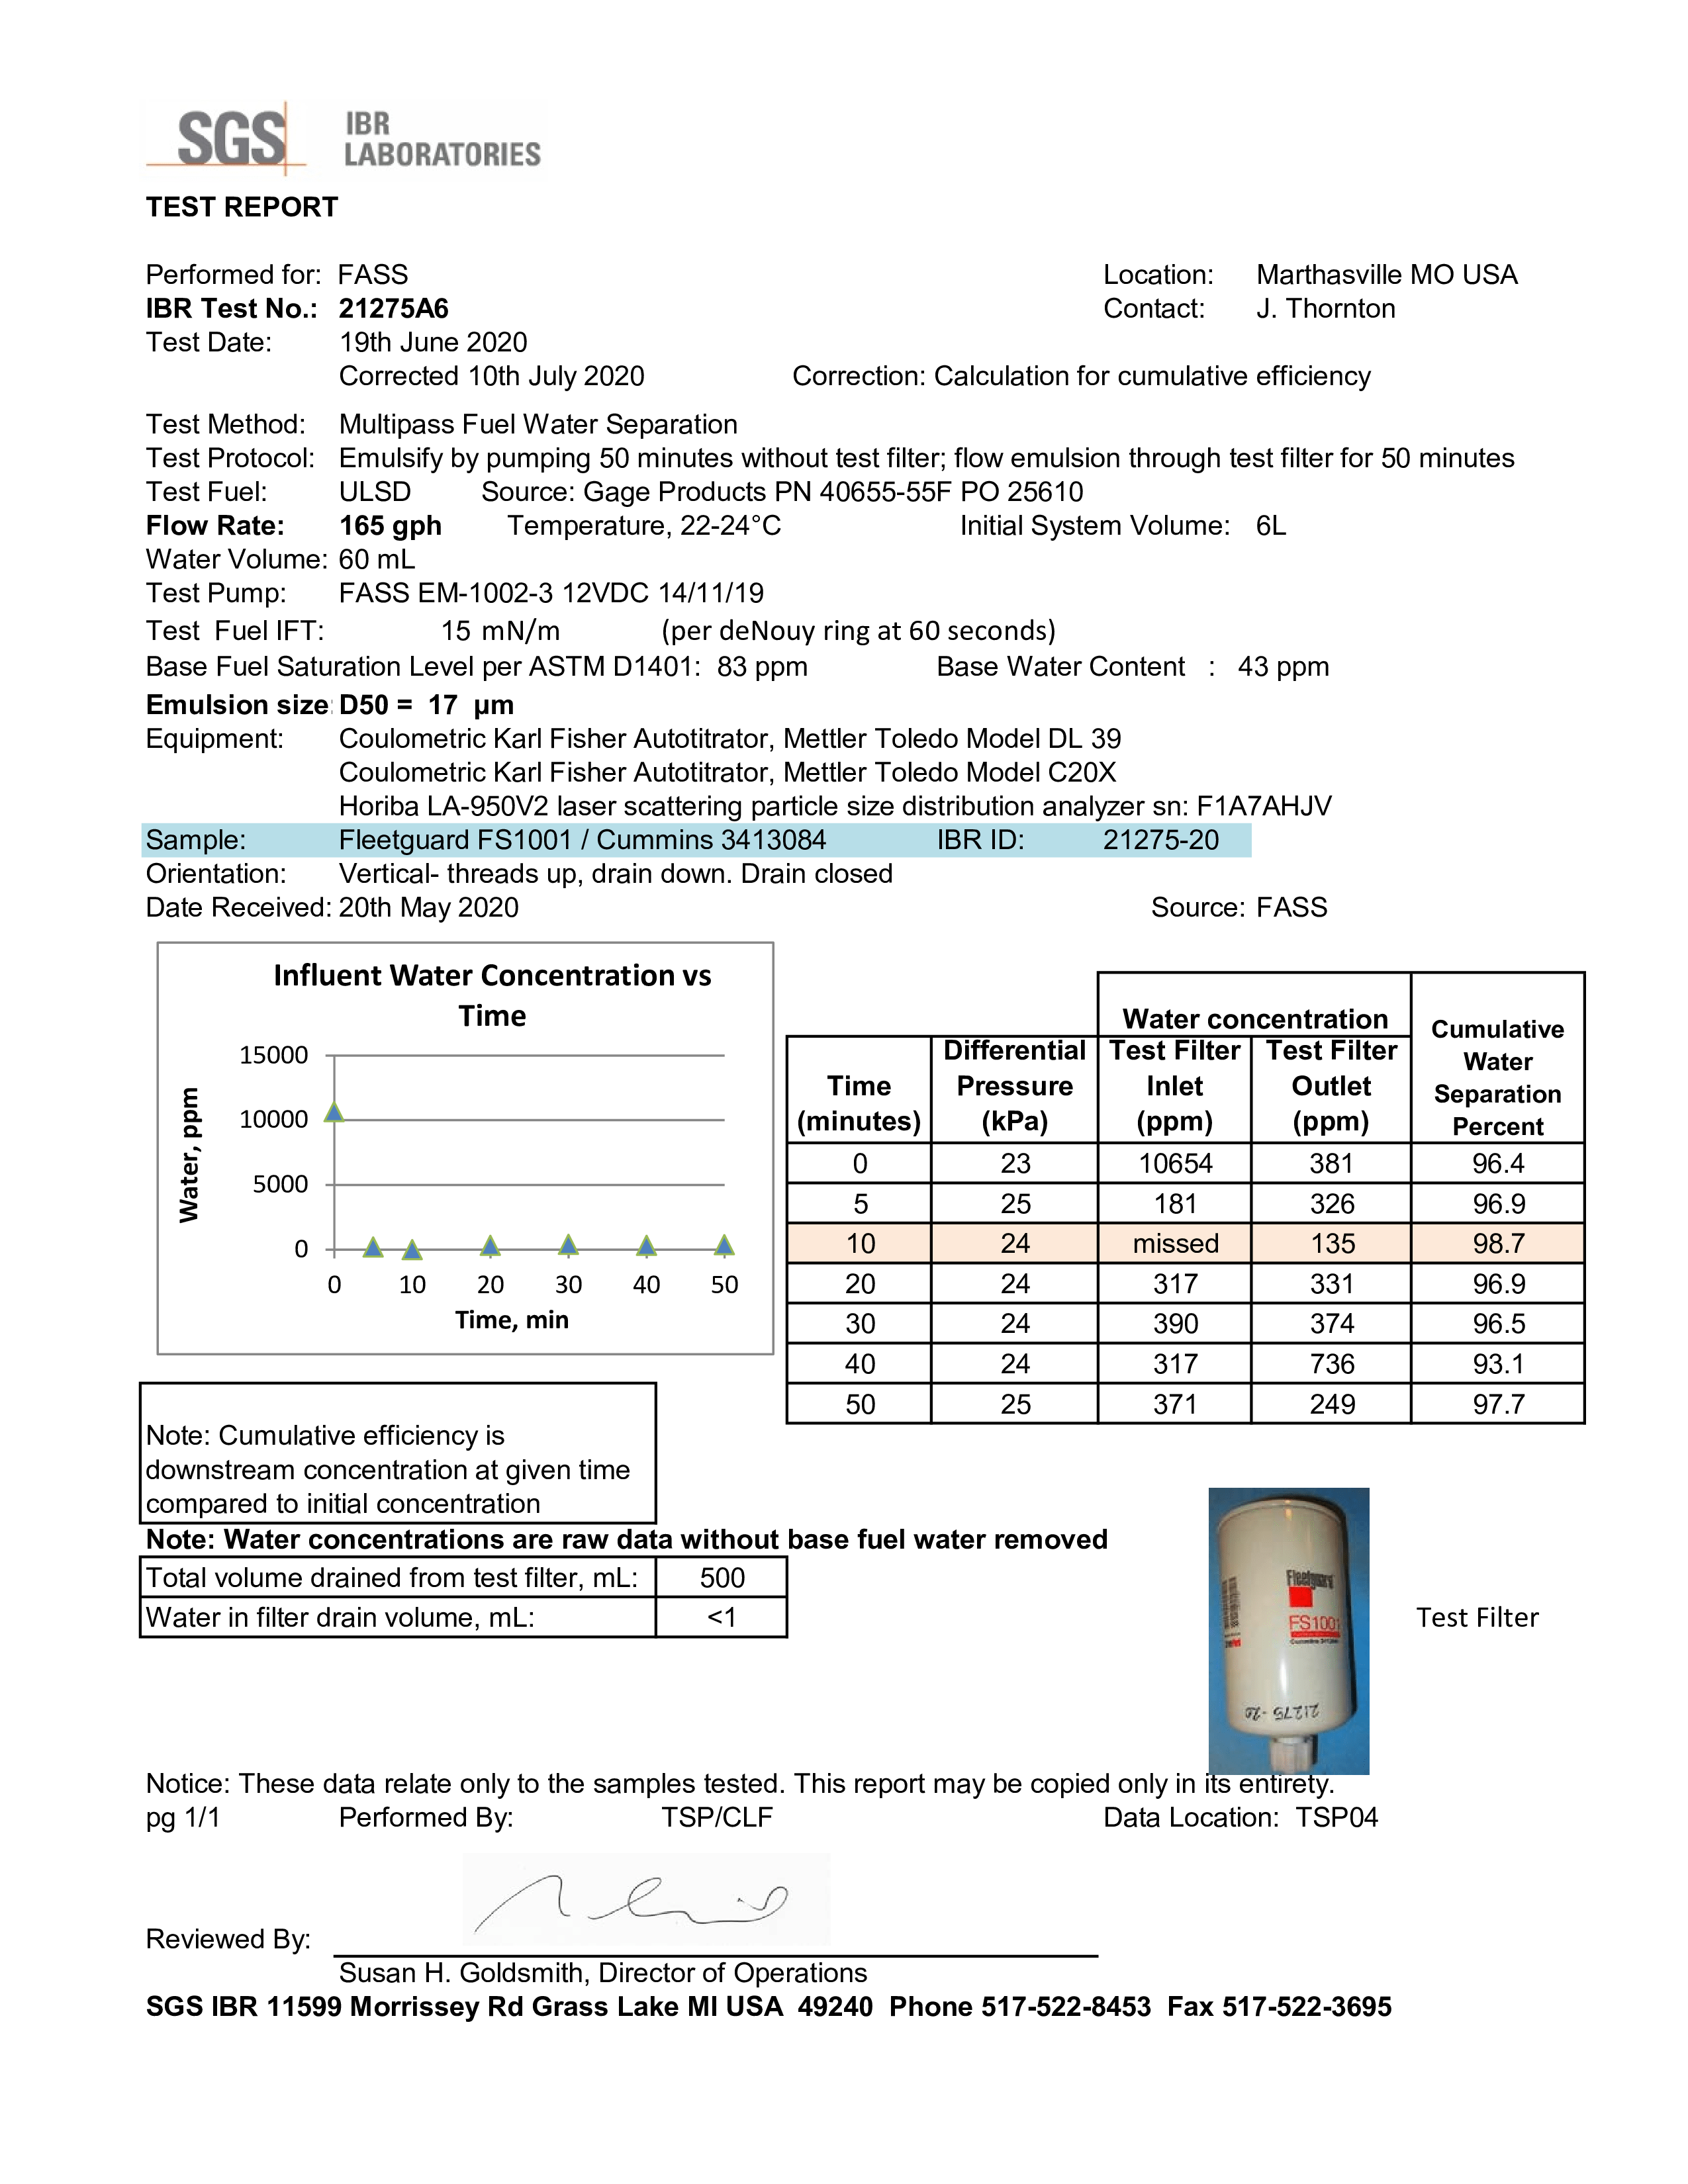 Fleetguard FS1001 fuel filter tst result